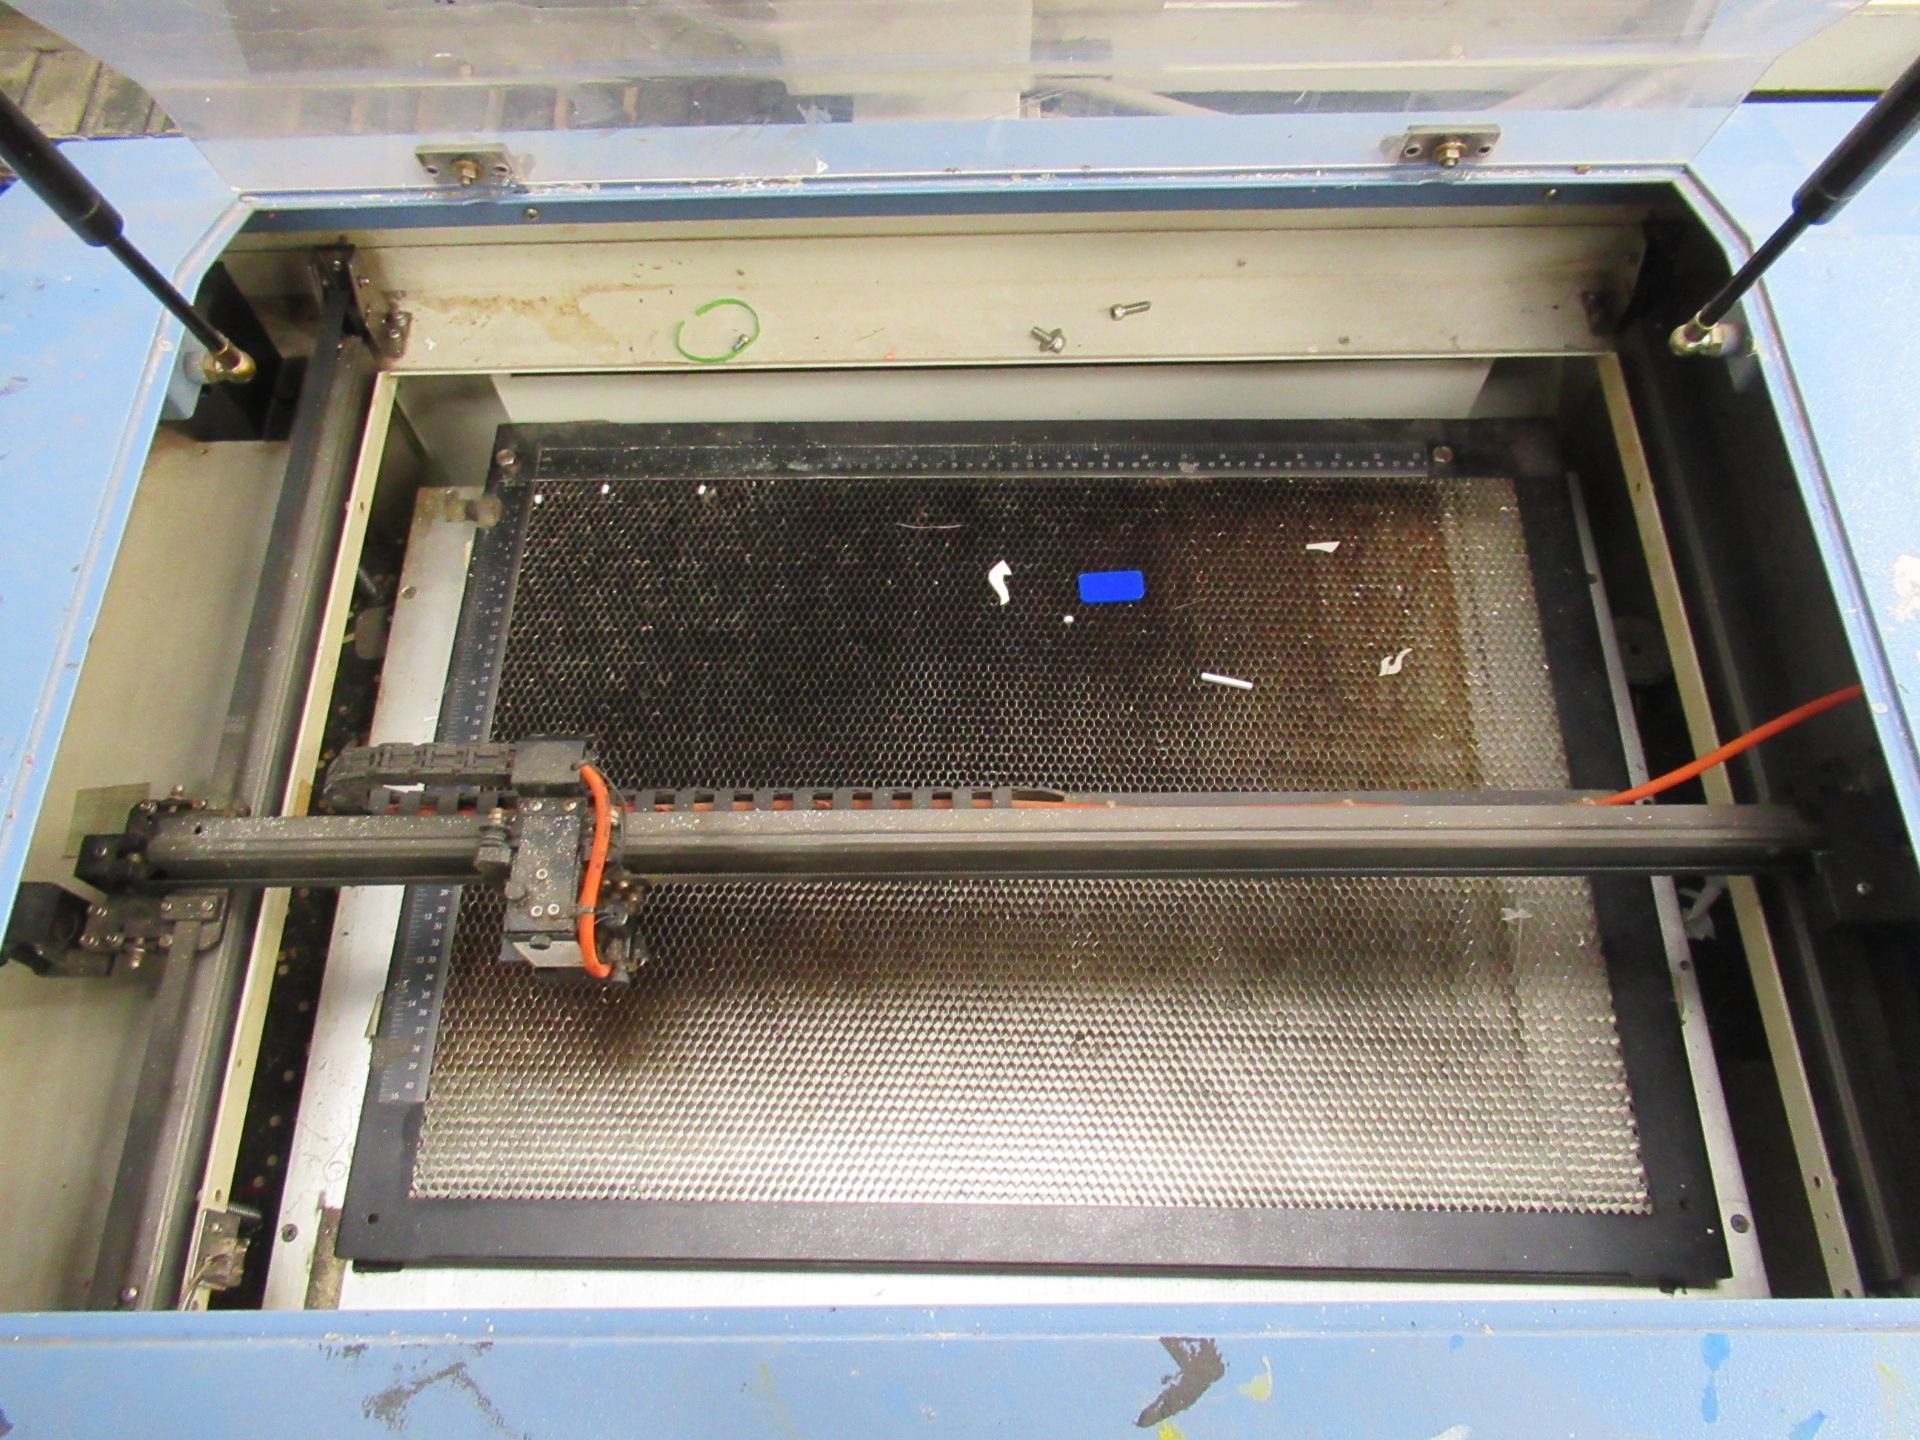 A Mercury Lazer Pro Lazer Engraver comes with an advantage AD400TS filter unit - Bild 6 aus 9